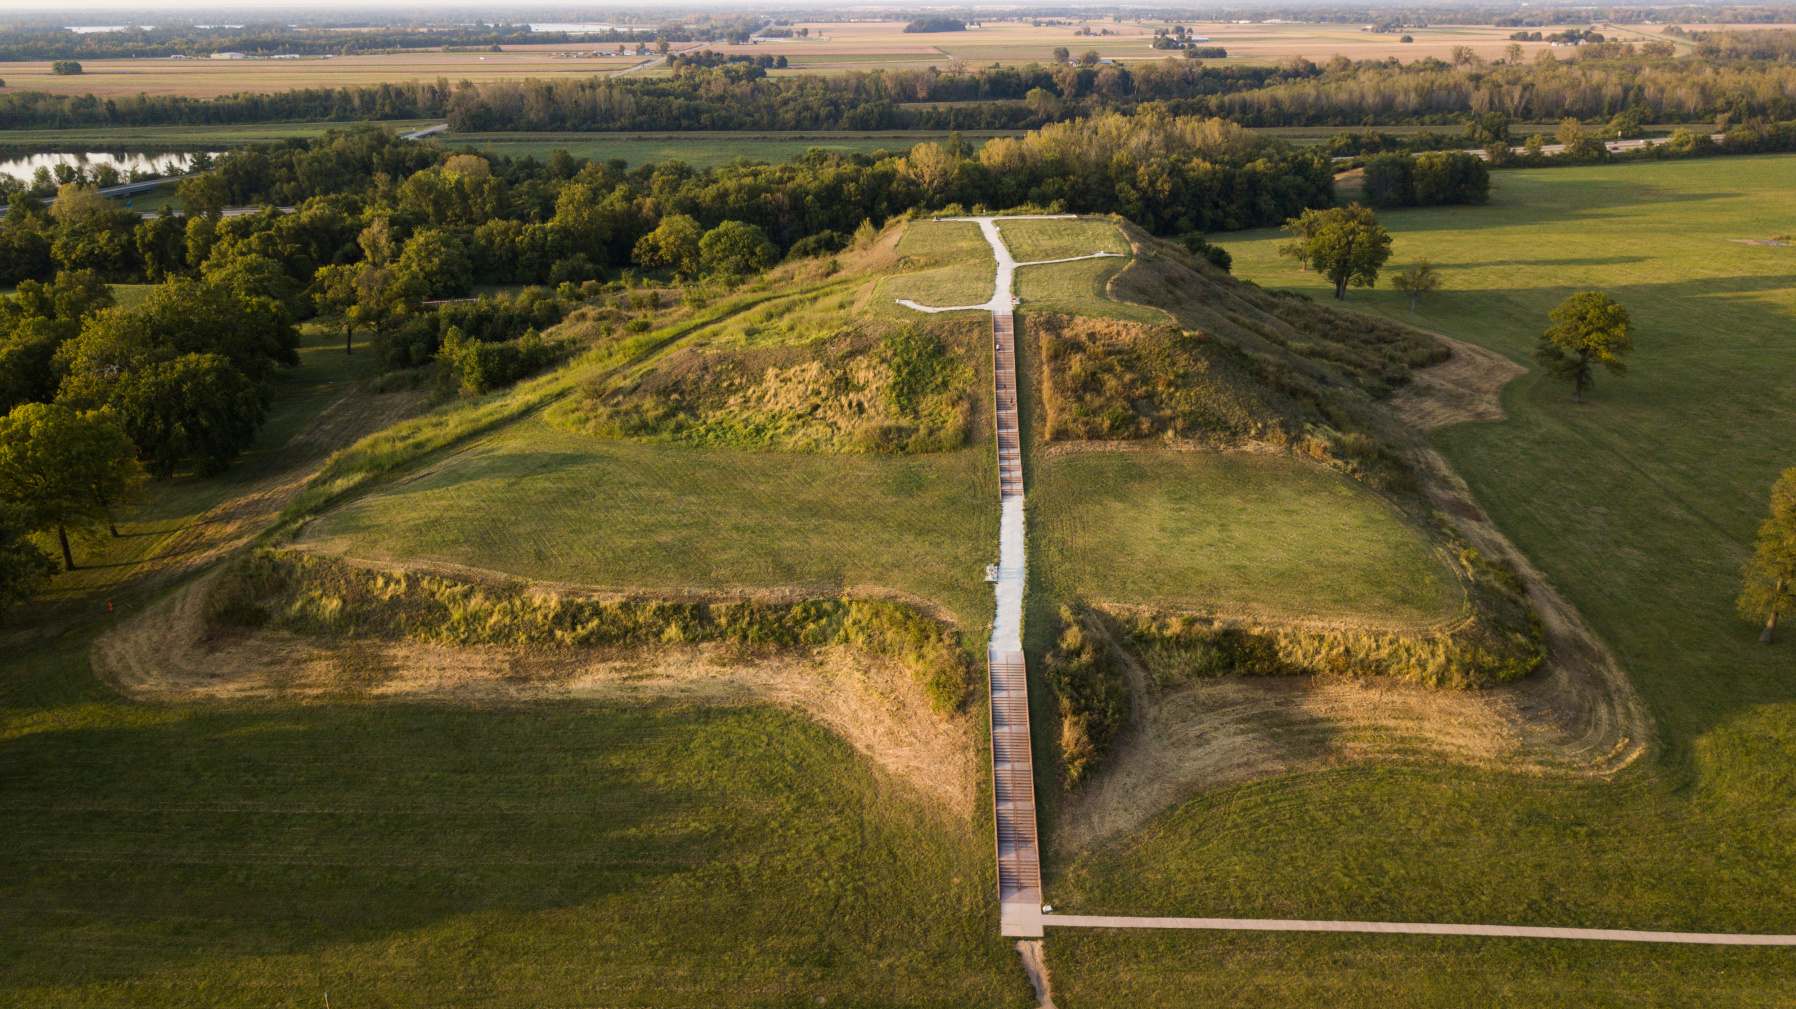 Monks Mound, construido entre 950 y 1100 CE y ubicado en Cahokia Mounds, declarado Patrimonio de la Humanidad por la UNESCO, cerca de Collinsville, Illinois, es el movimiento de tierra precolombino más grande en América al norte de Mesoamérica. Varias culturas precolombinas se denominan colectivamente "constructores de montículos".